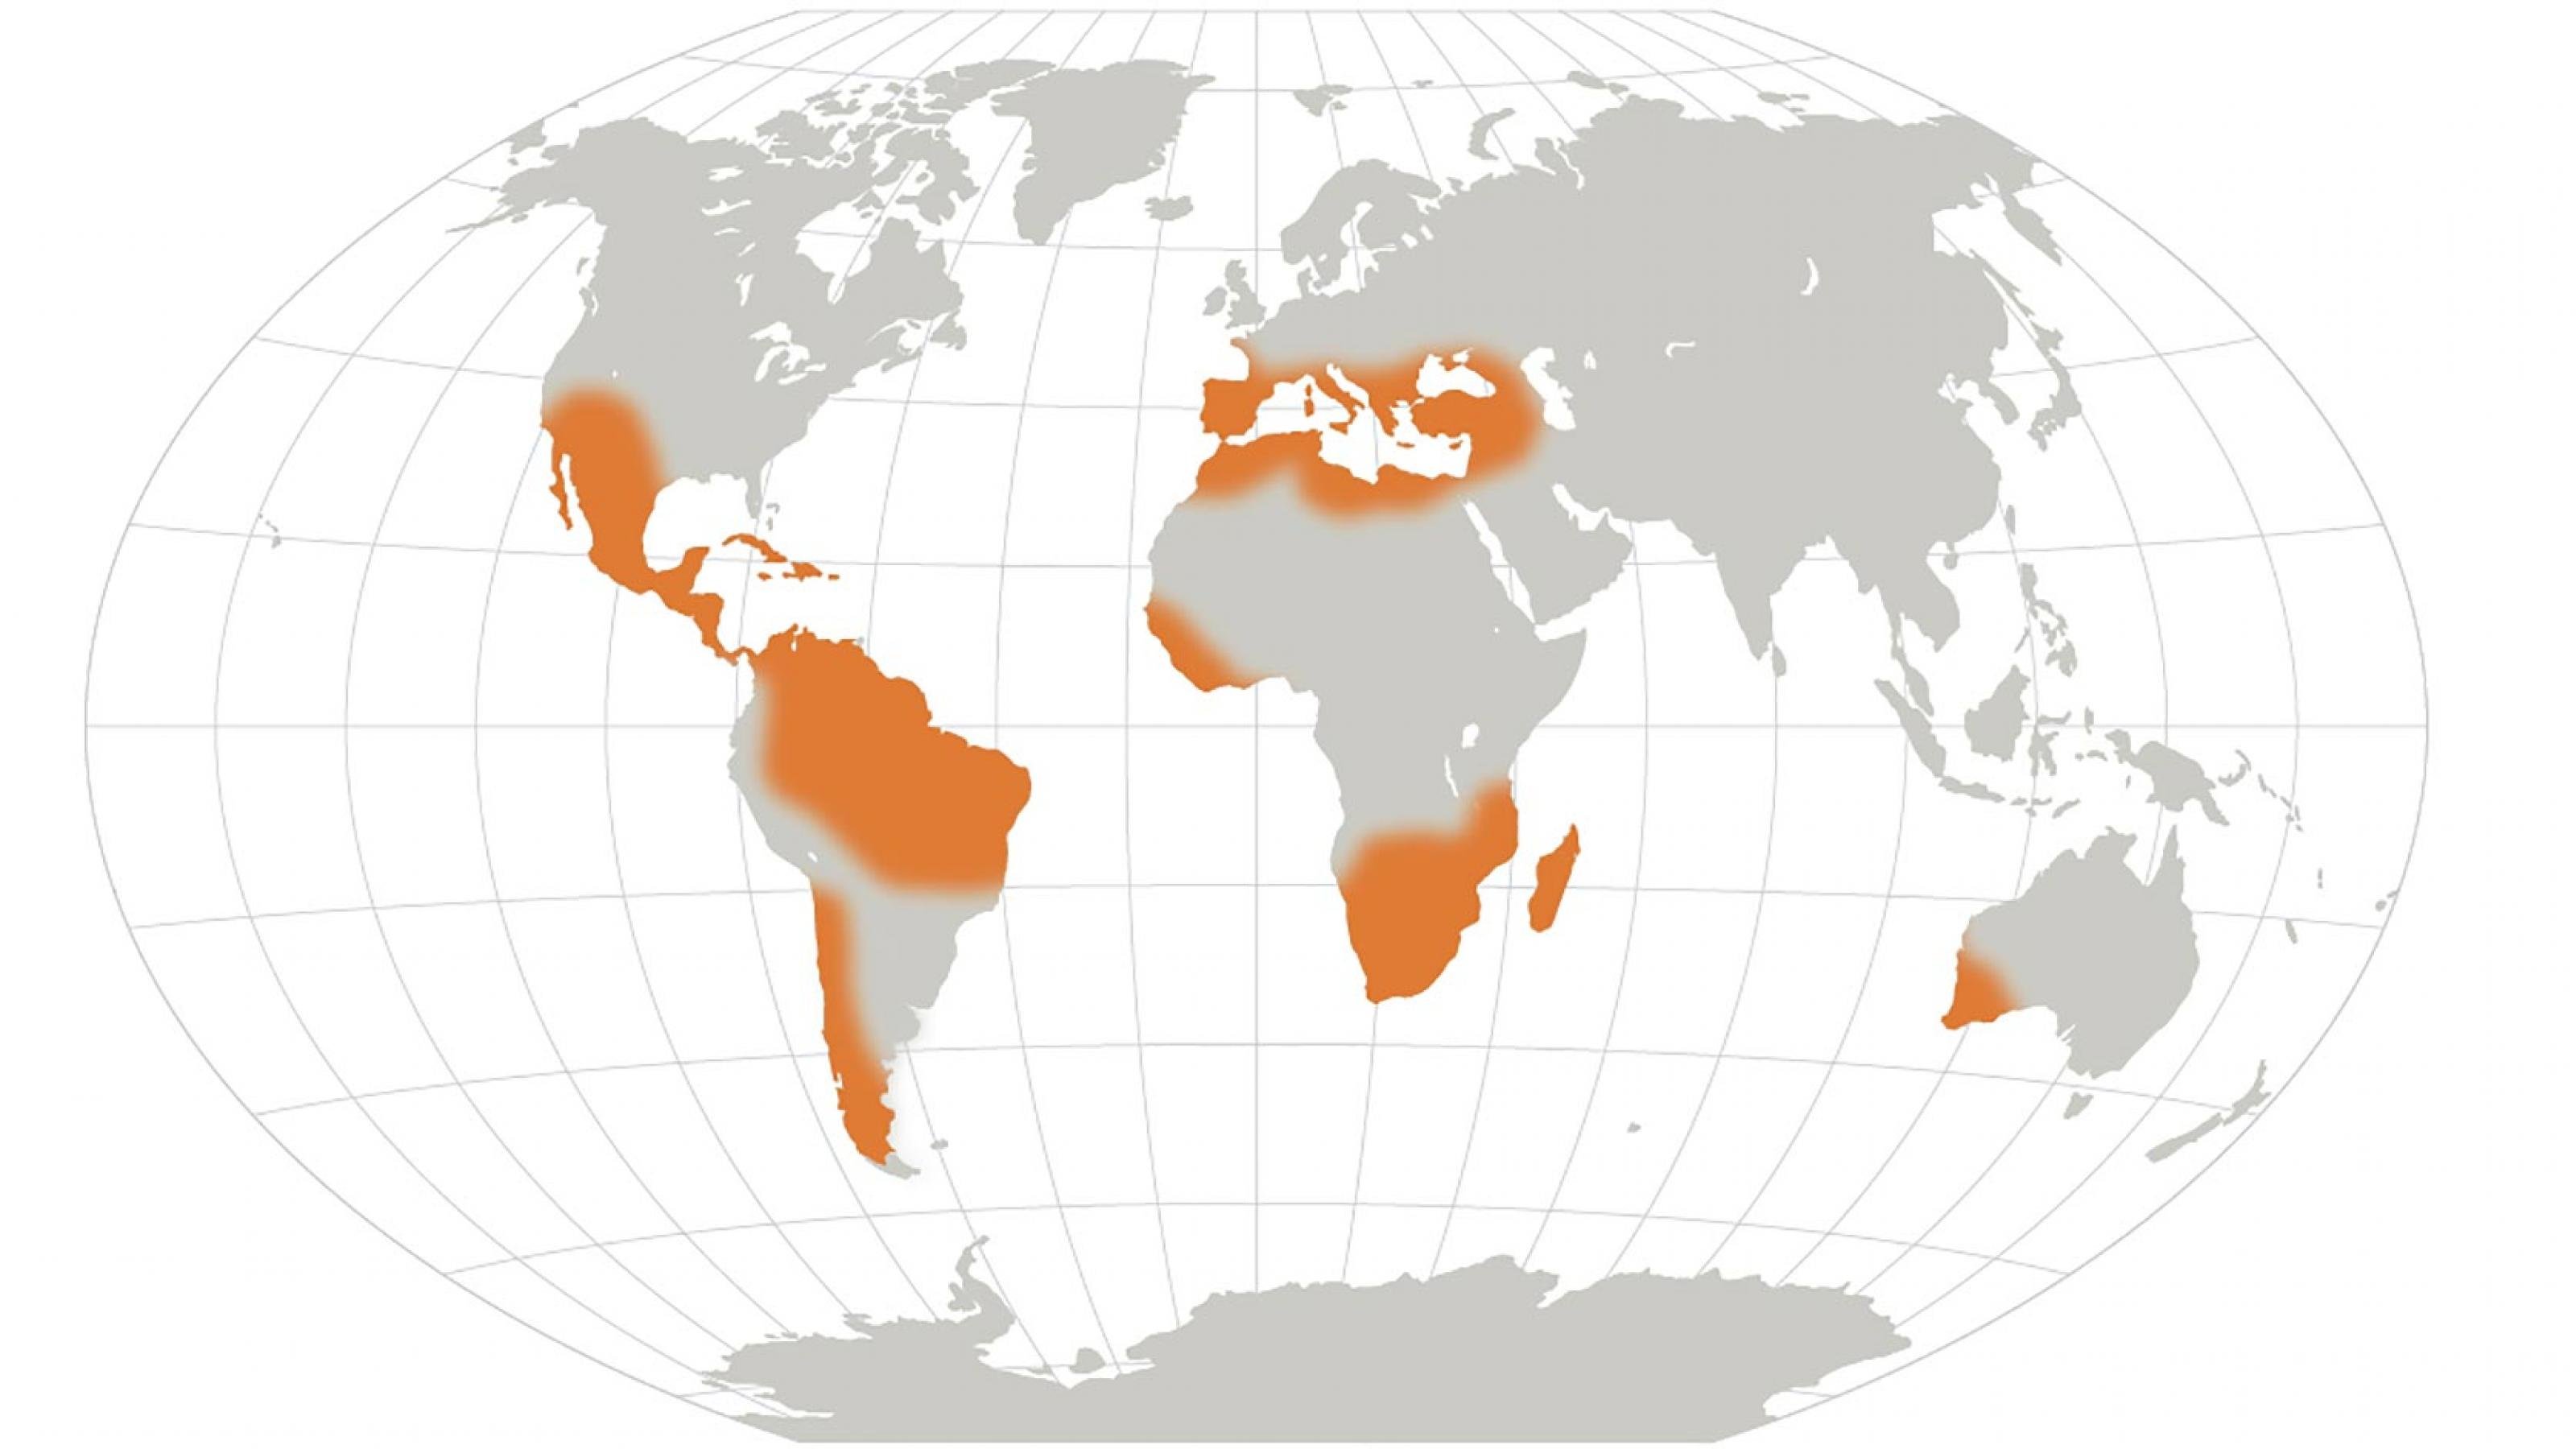 Weltkarte mit orangefarbenen Bereichen vor allem in Mittel- und Südamerika sowie Afrika